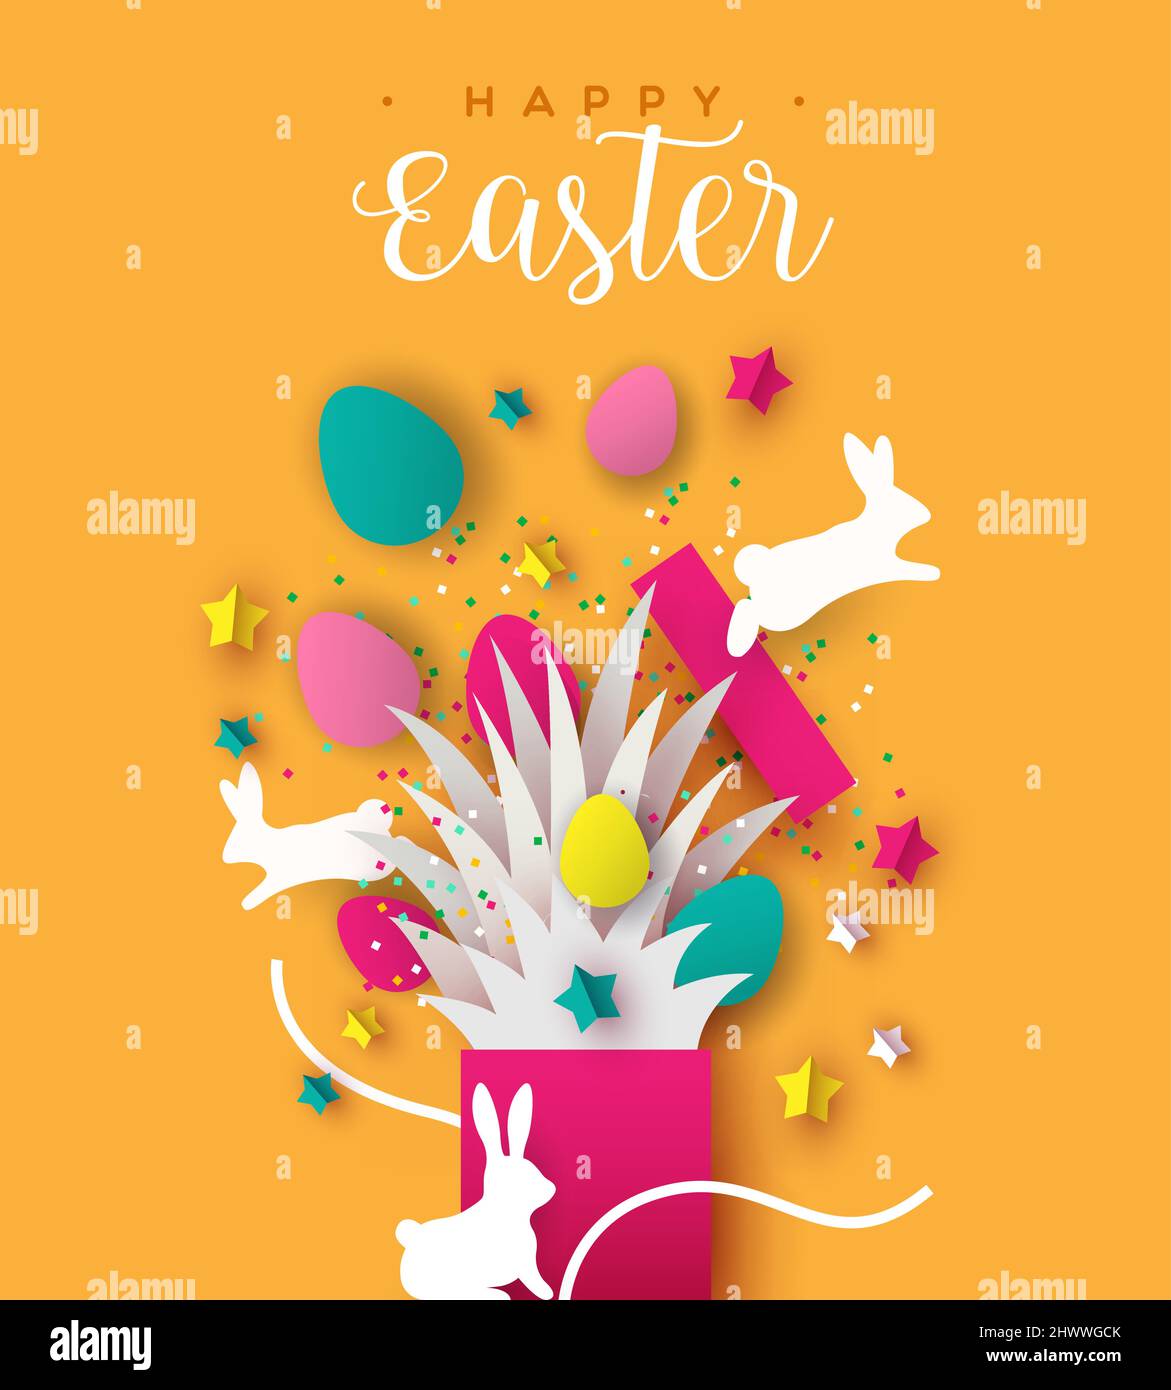 Feliz Pascua tarjeta de felicitación de regalo de conejo con adorno de artesanía de papel y texto festivo cita. Ilustración realista de recorte de 3D capas para tr Ilustración del Vector